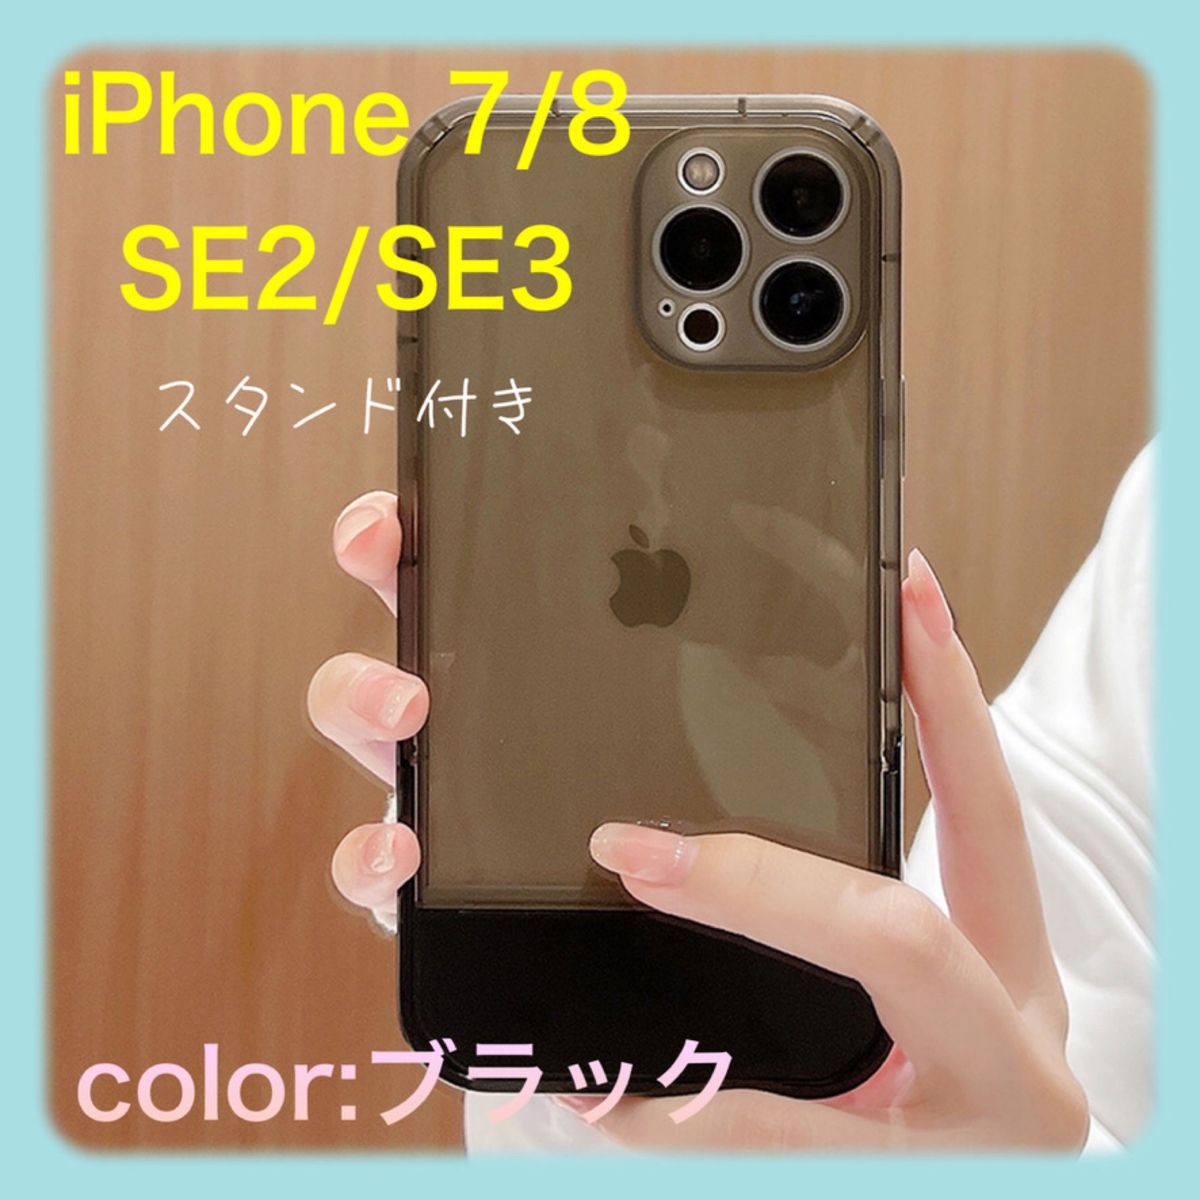 iPhone7/ iPhone8/SE2/SE3 クリア ケース スタンド付き  パステルカラー 透明 ブラック